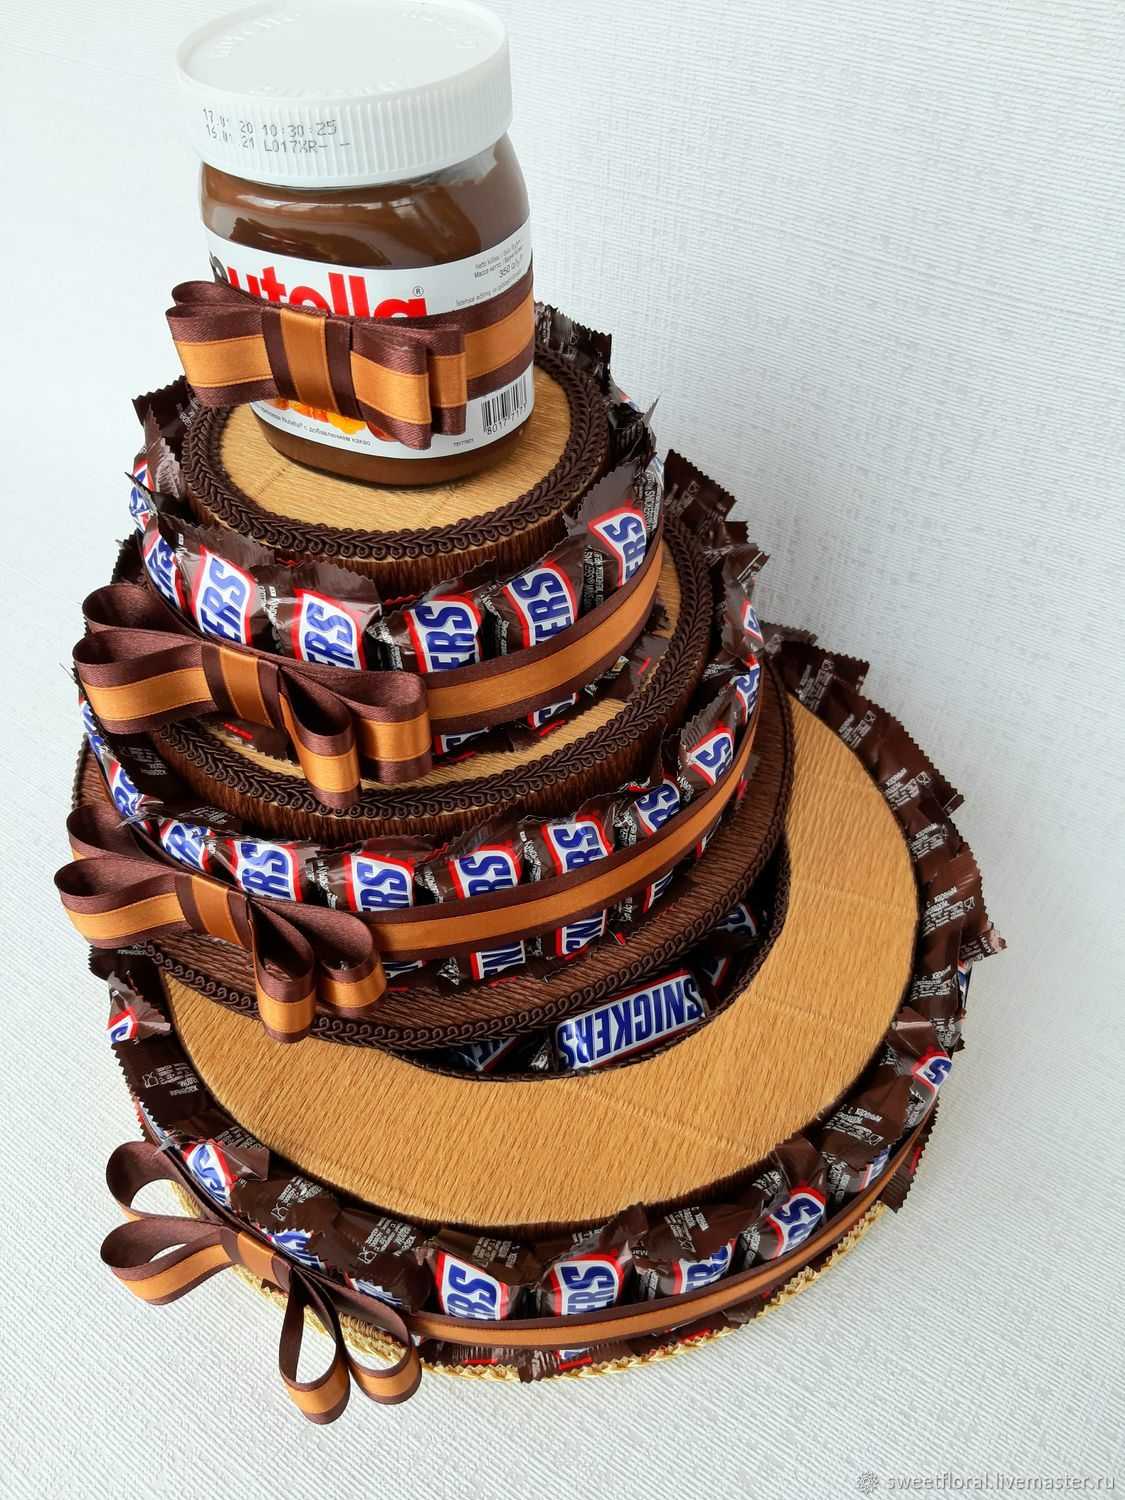 Свадебный торт из конфет – оригинальная альтернатива стандартным кондитерским изделиям Узнайте какой декор лакомства подойдет для вашего торжества